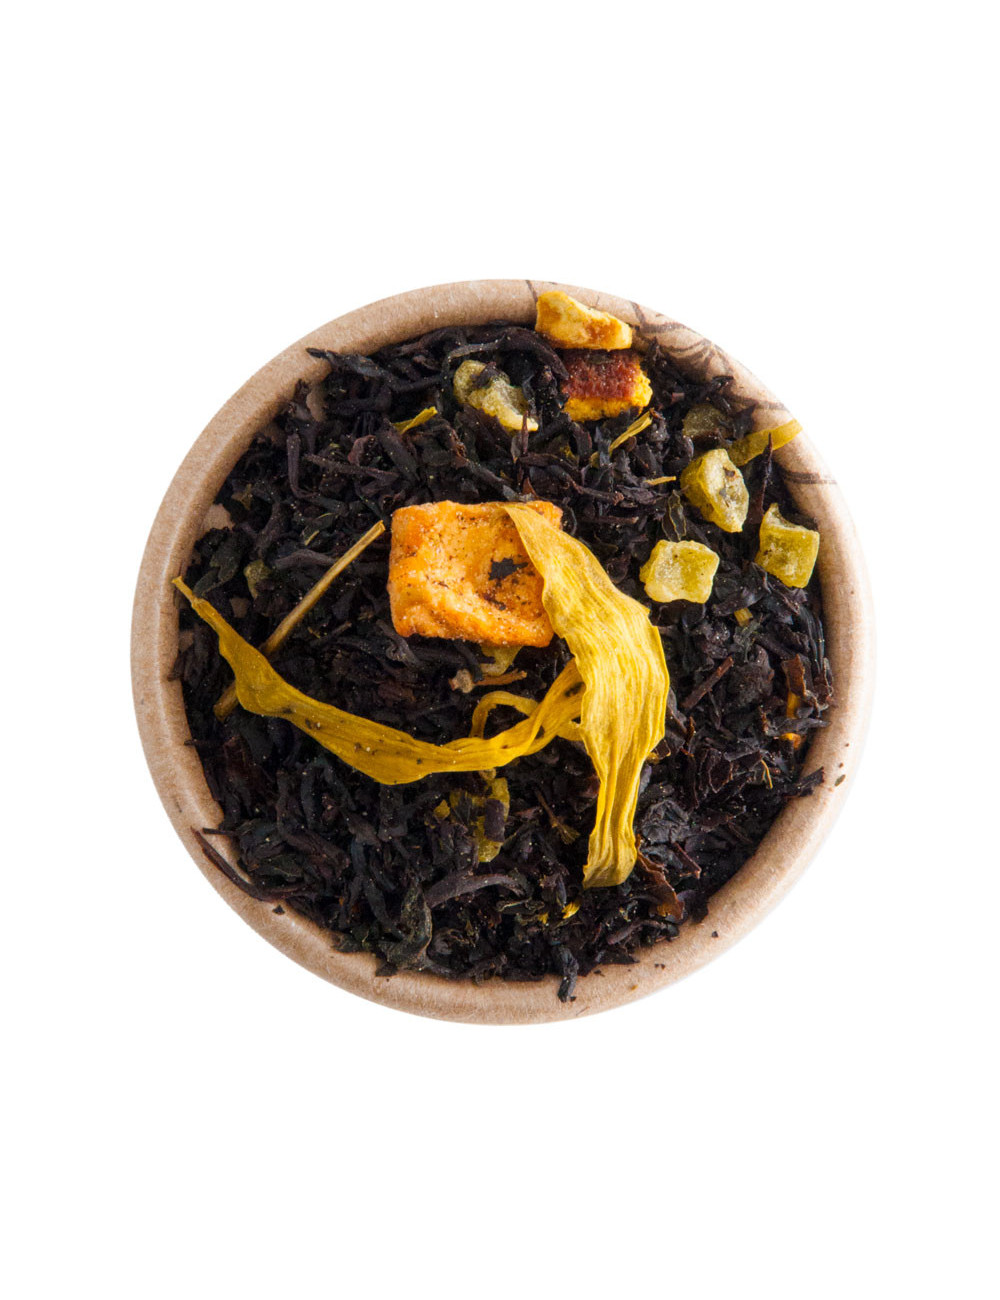 “Black Mojito” Lime e Menta tè nero aromatizzato - La Pianta del Tè shop online